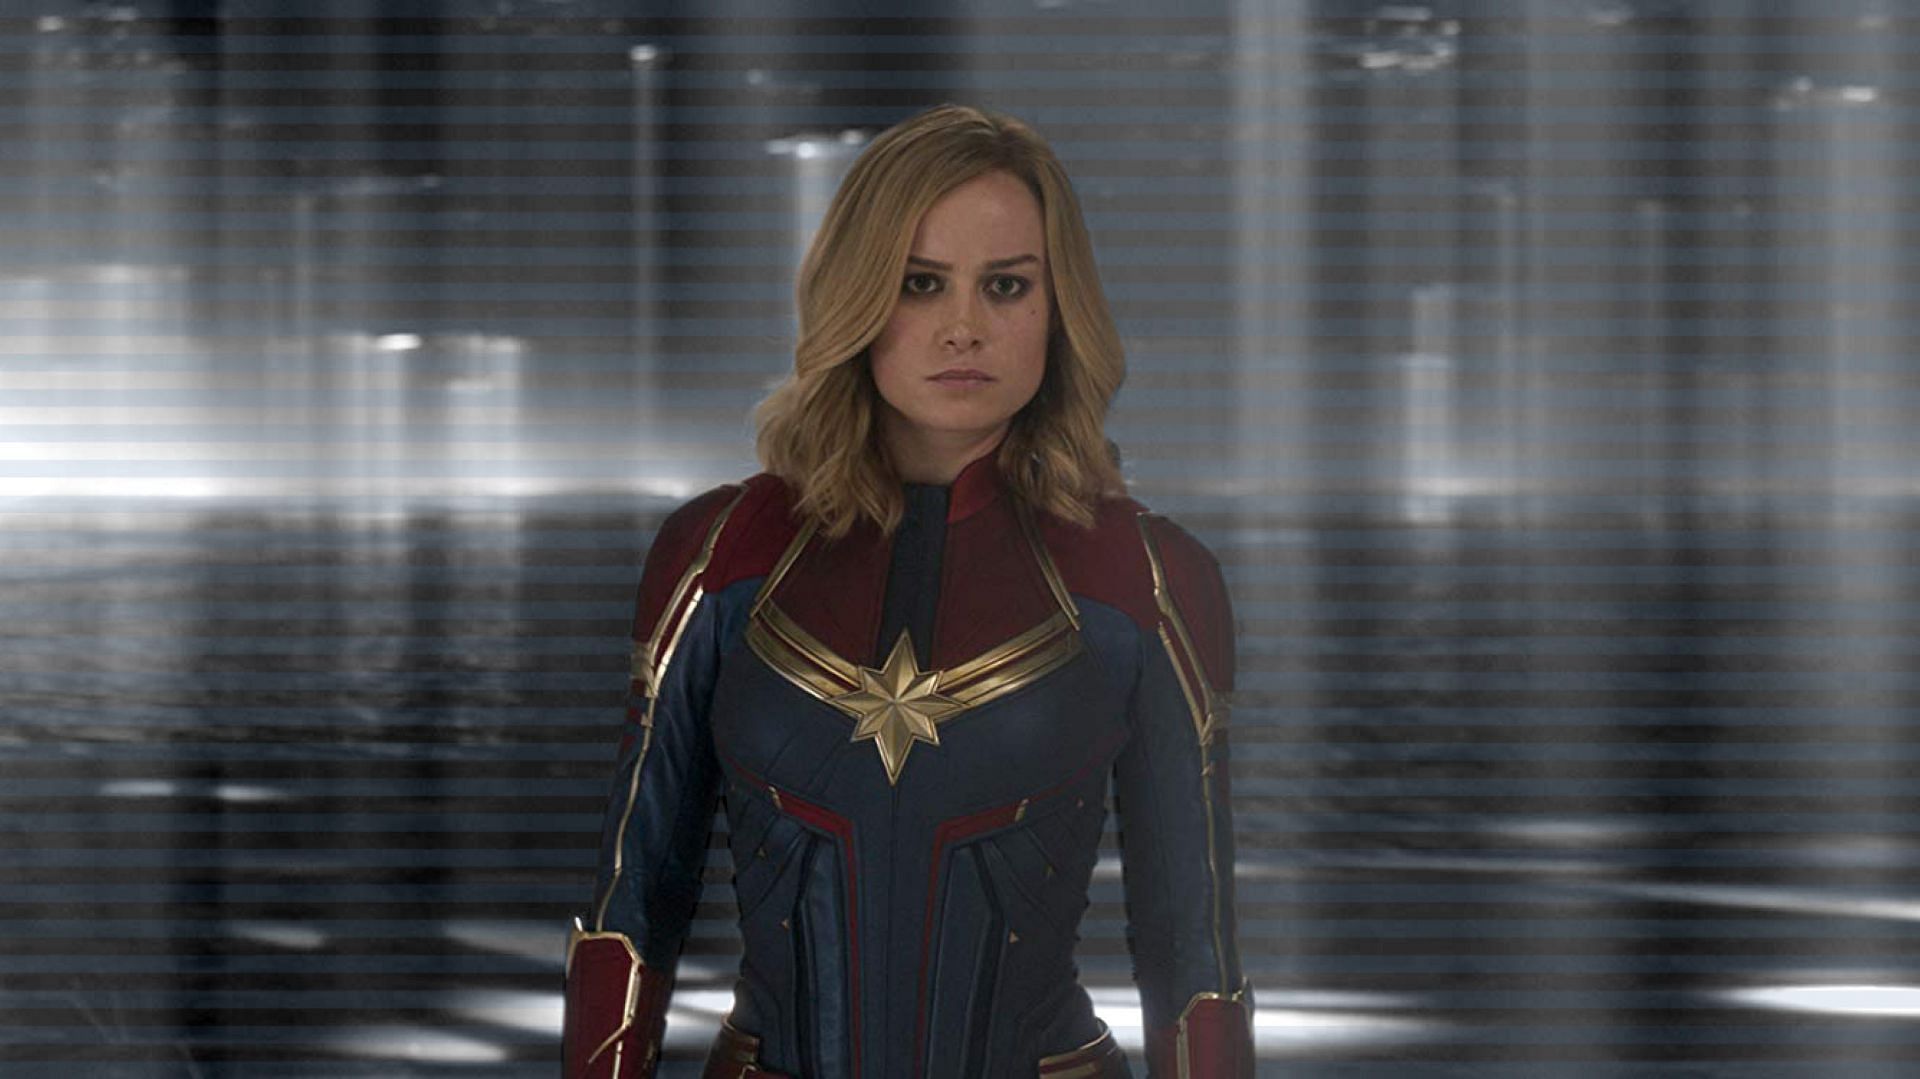 Brie Larson in Captain Marvel (Image via Marvel Studios)